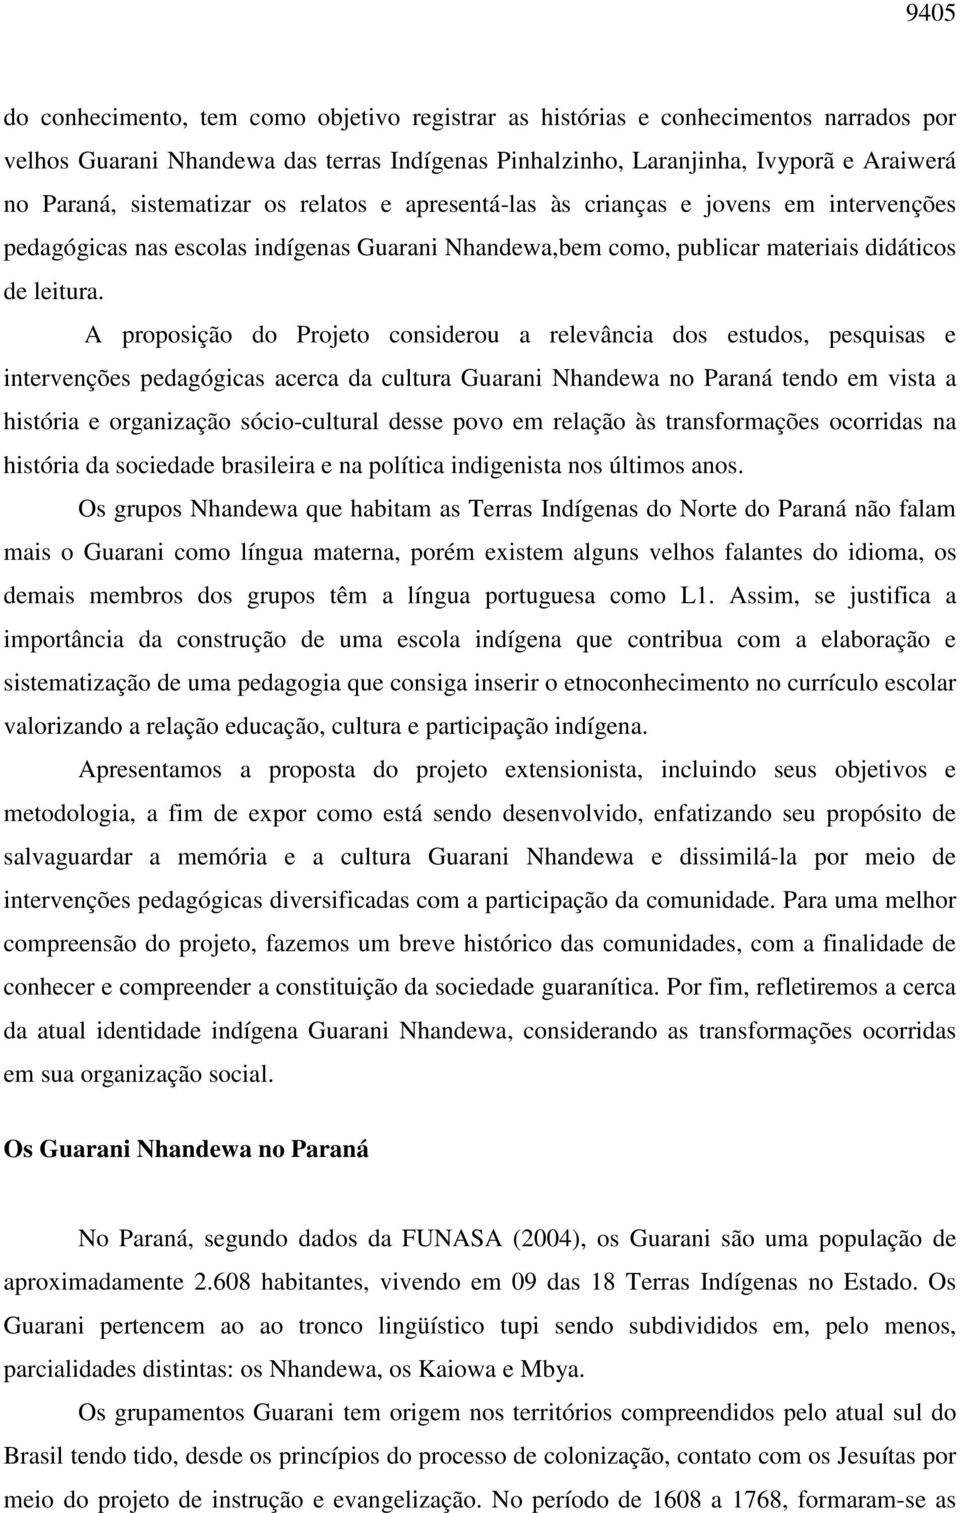 A proposição do Projeto considerou a relevância dos estudos, pesquisas e intervenções pedagógicas acerca da cultura Guarani Nhandewa no Paraná tendo em vista a história e organização sócio-cultural